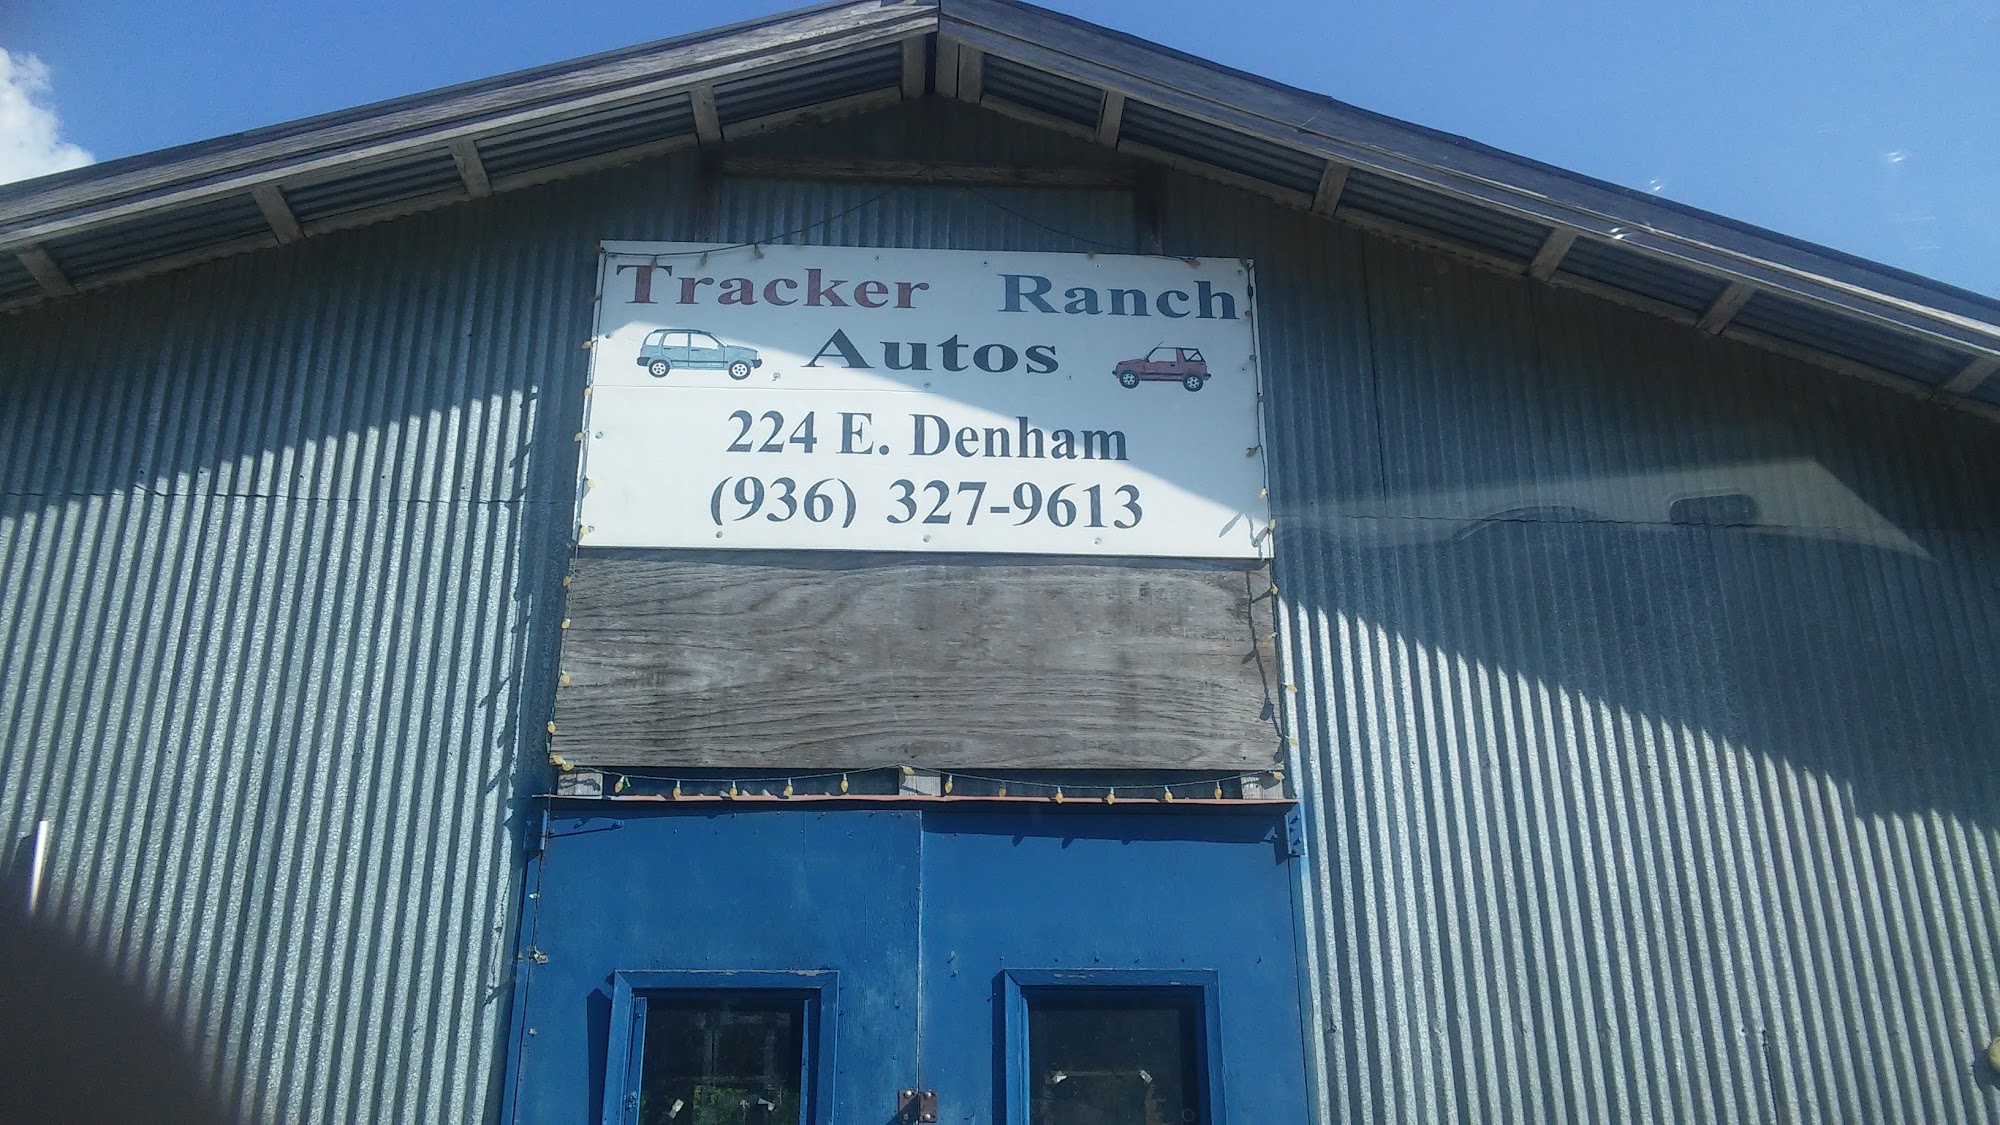 Tracker Ranch Autos